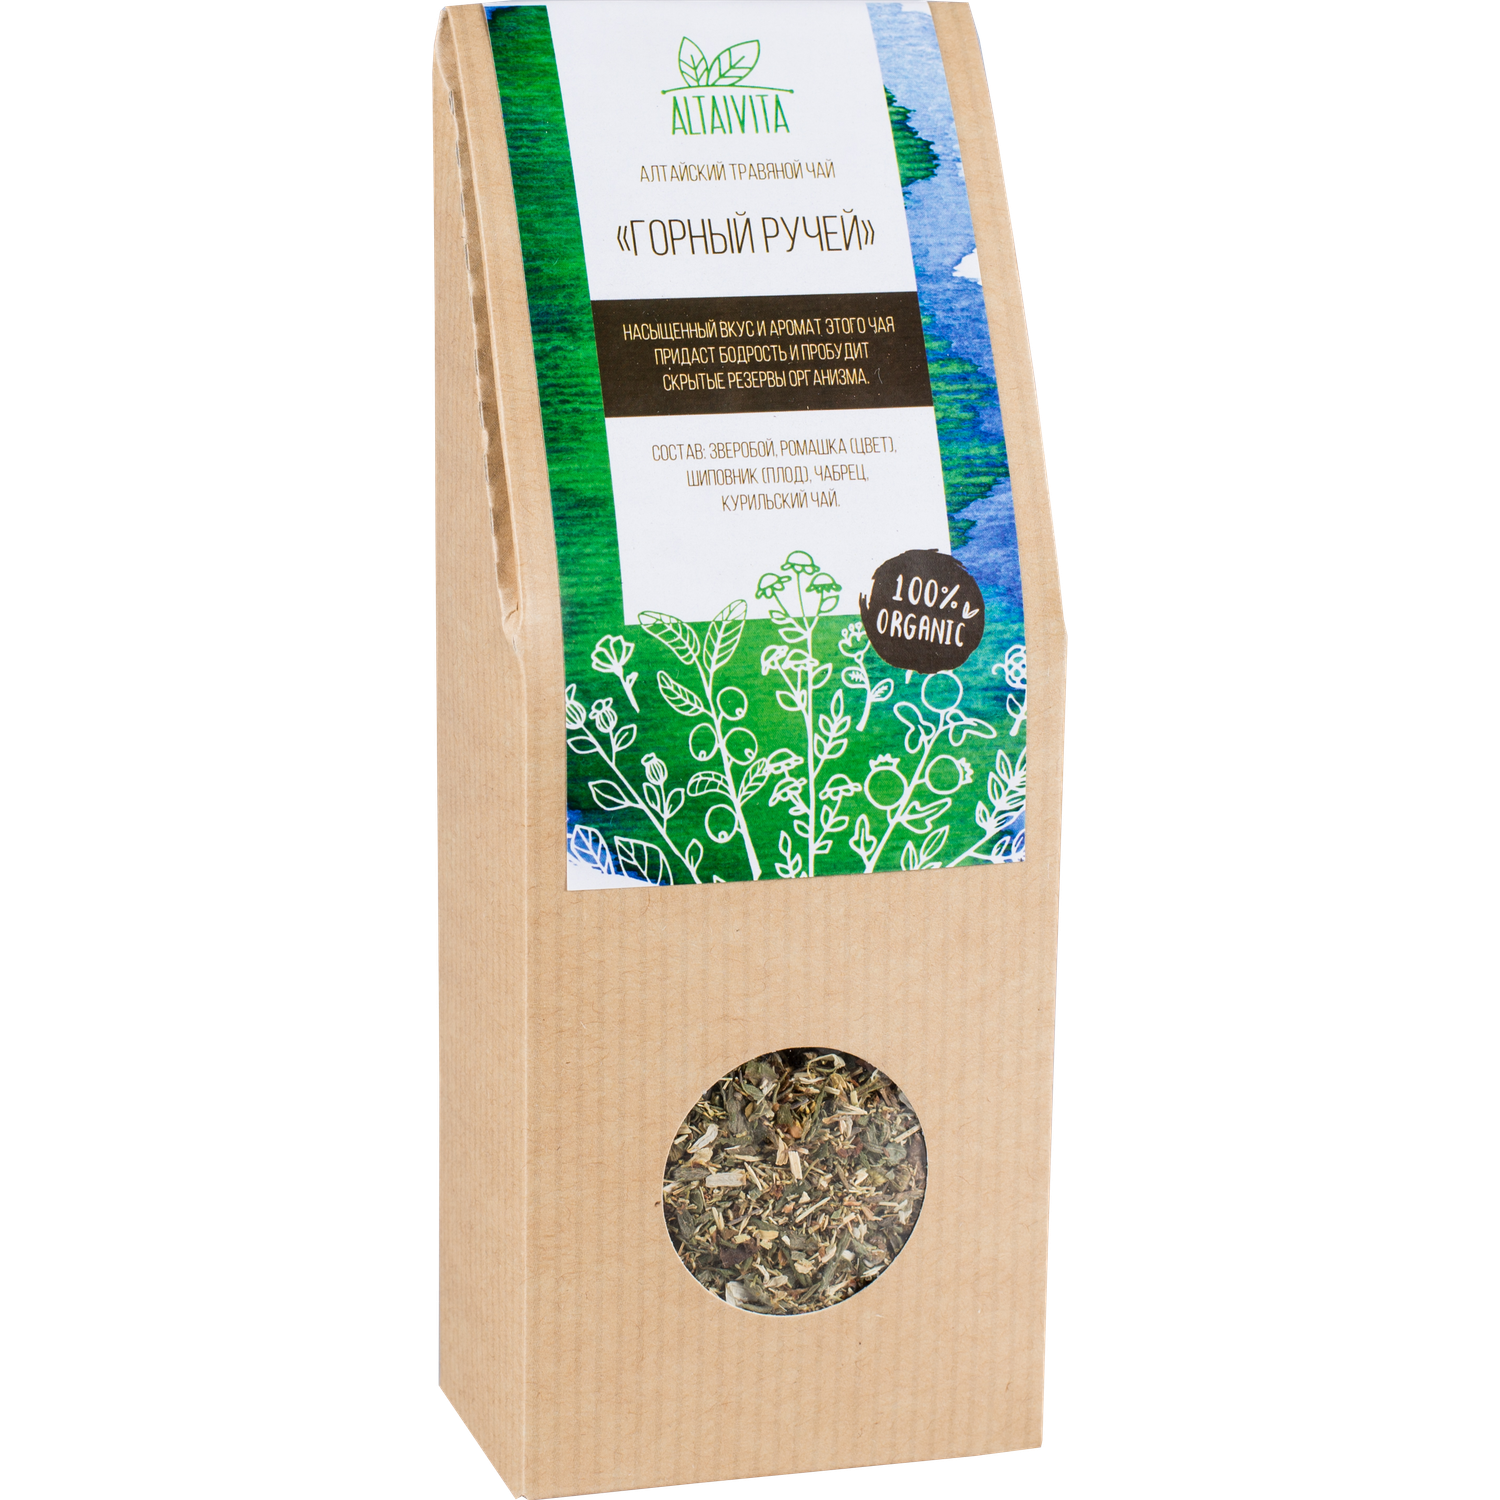 Травяной чай Горный ручей Altaivita 45 г крафт-коробка - фото 1